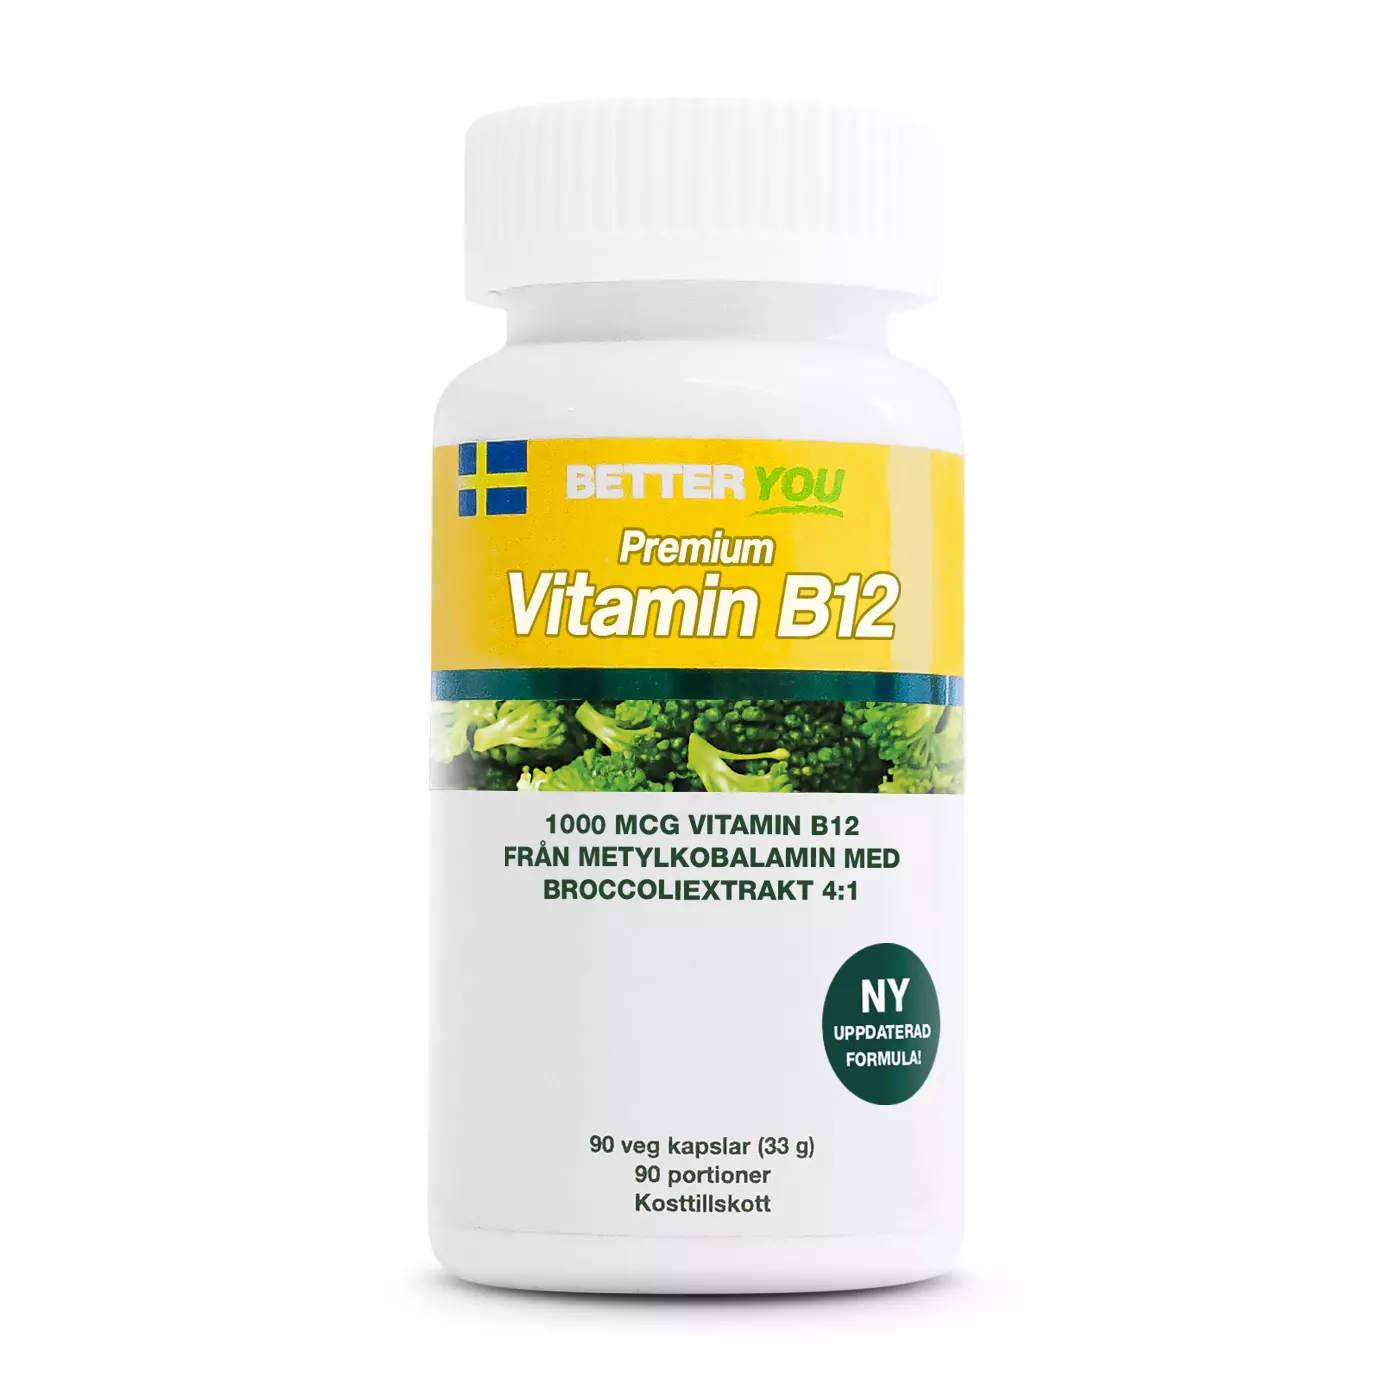 PREMIUM VITAMIN B12